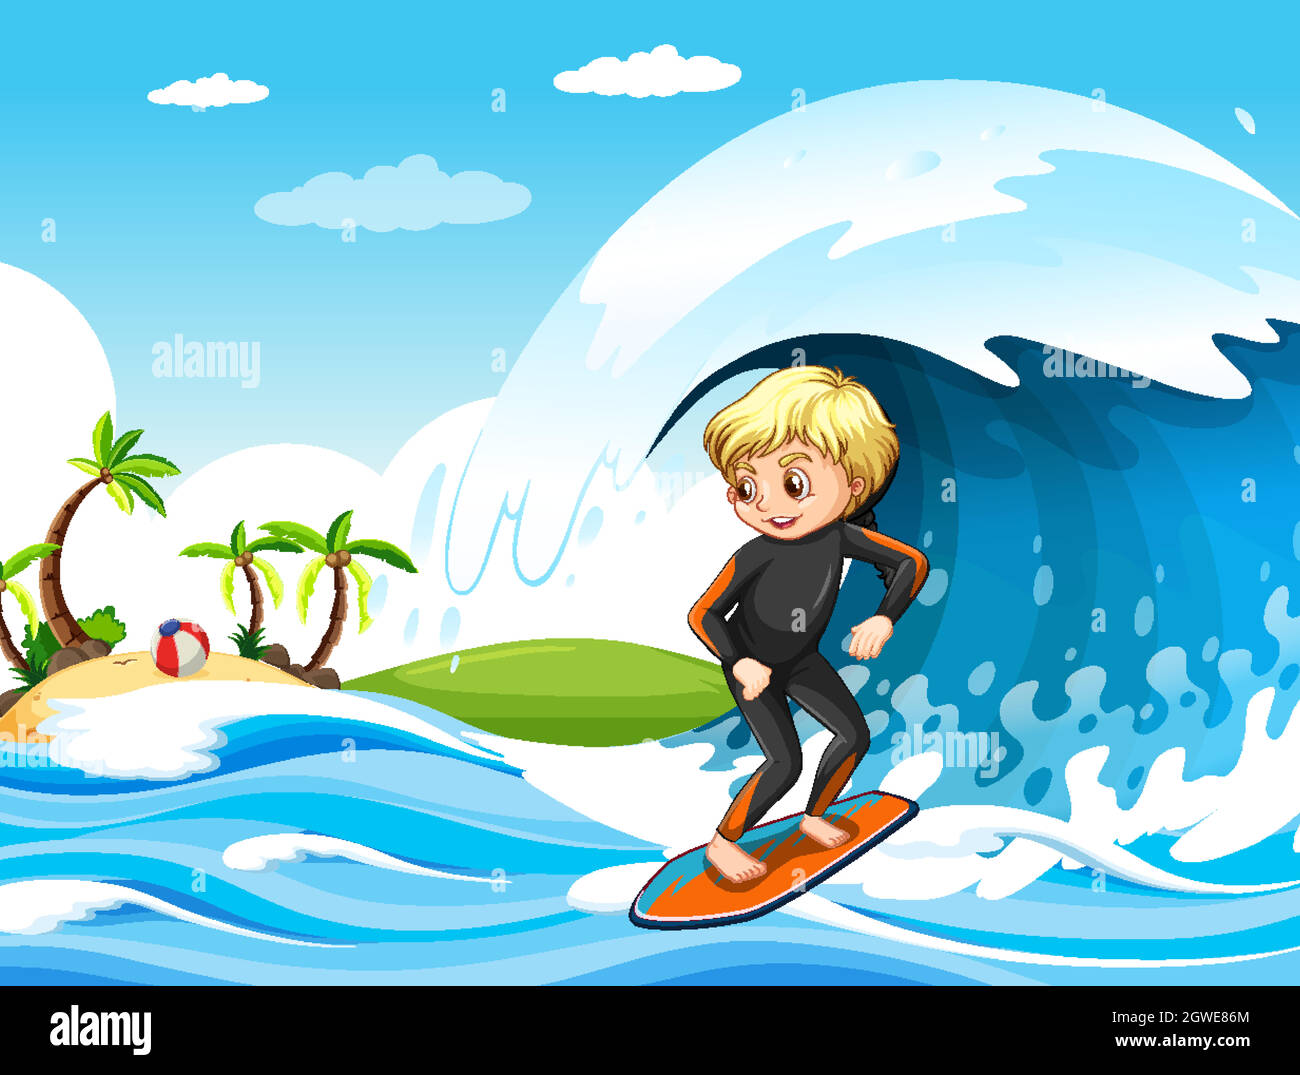 Grande vague dans la scène de l'océan avec un garçon debout sur une planche de surf Illustration de Vecteur